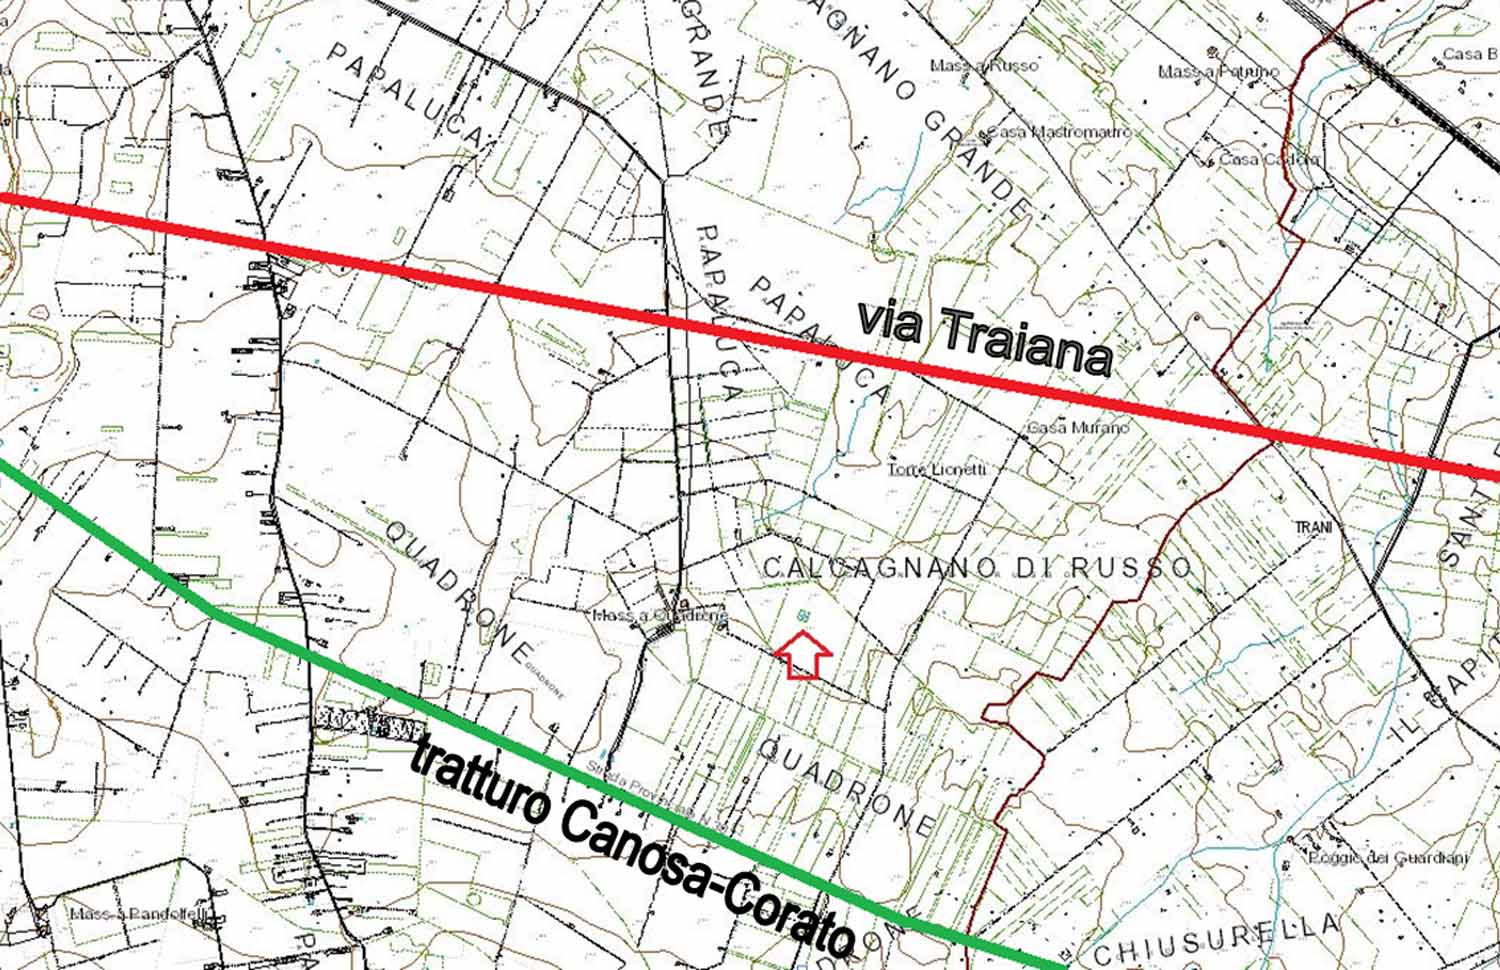 Planimetria della zona tratta dalla cartografia tecnica regionale.